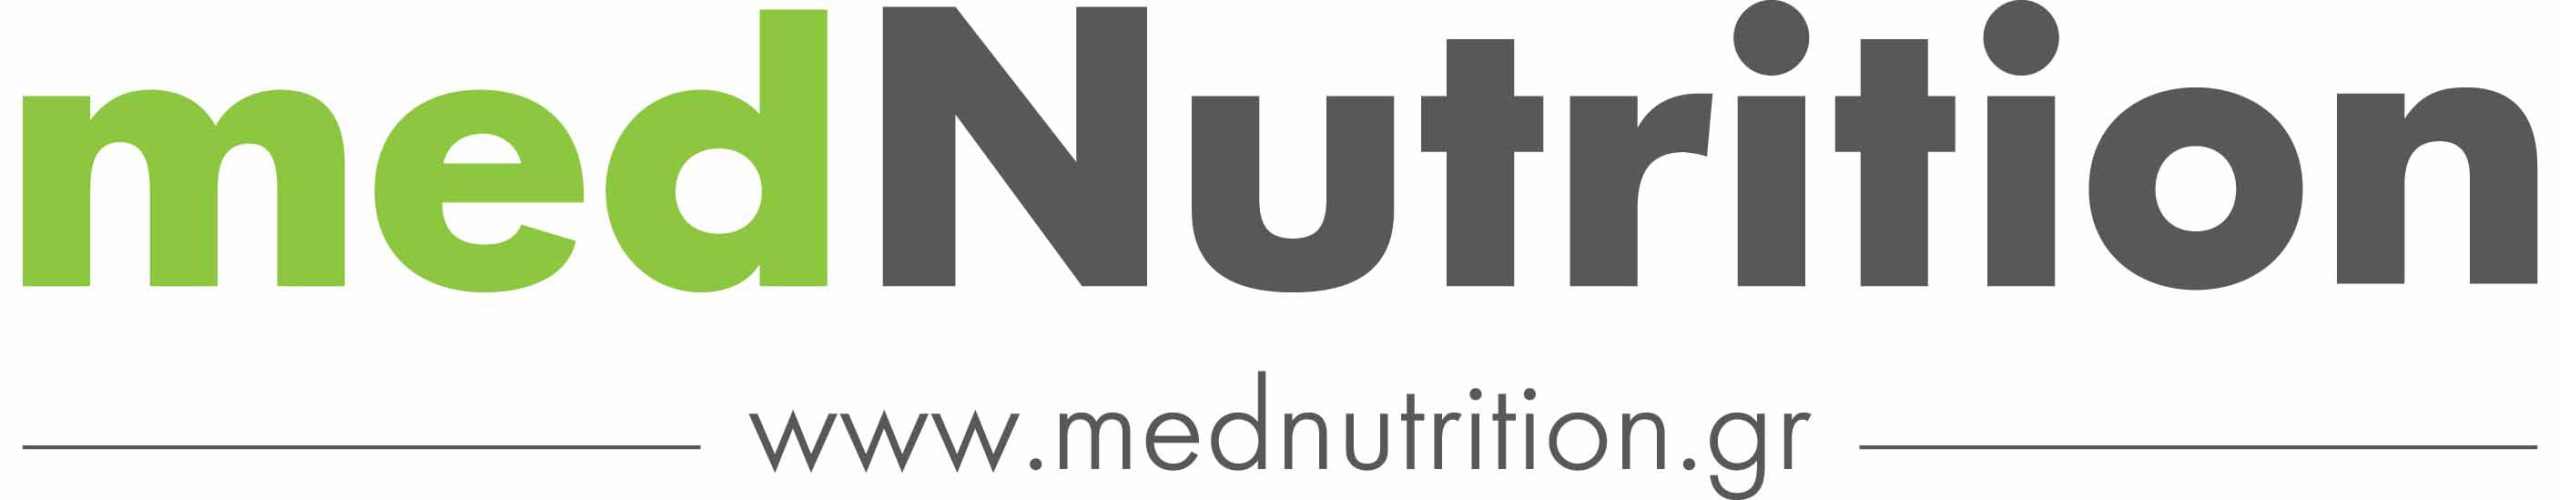 logo mednutritiongr flat